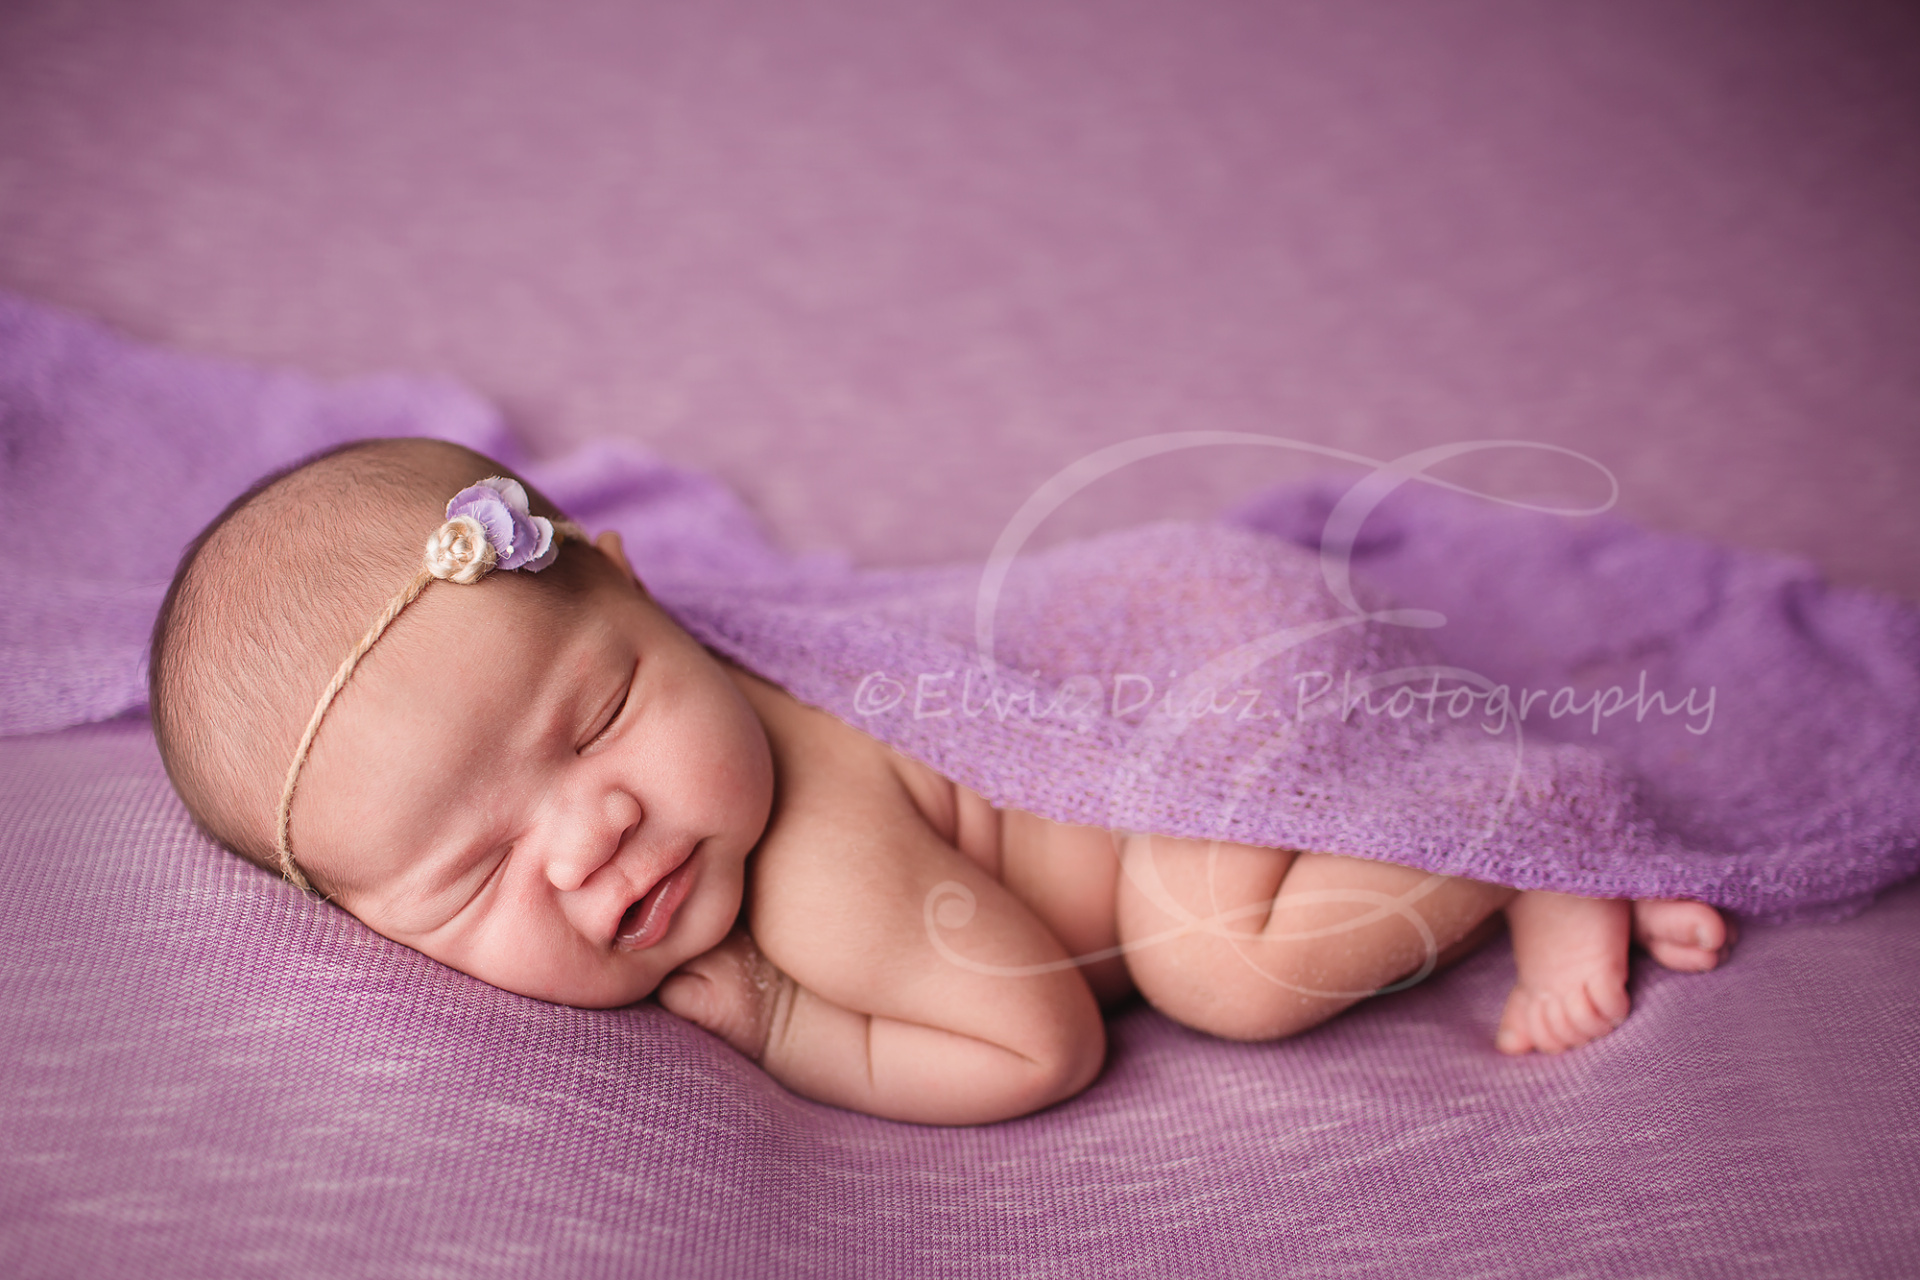 Myrcella 10days old (Chicago Newborn Photographer)